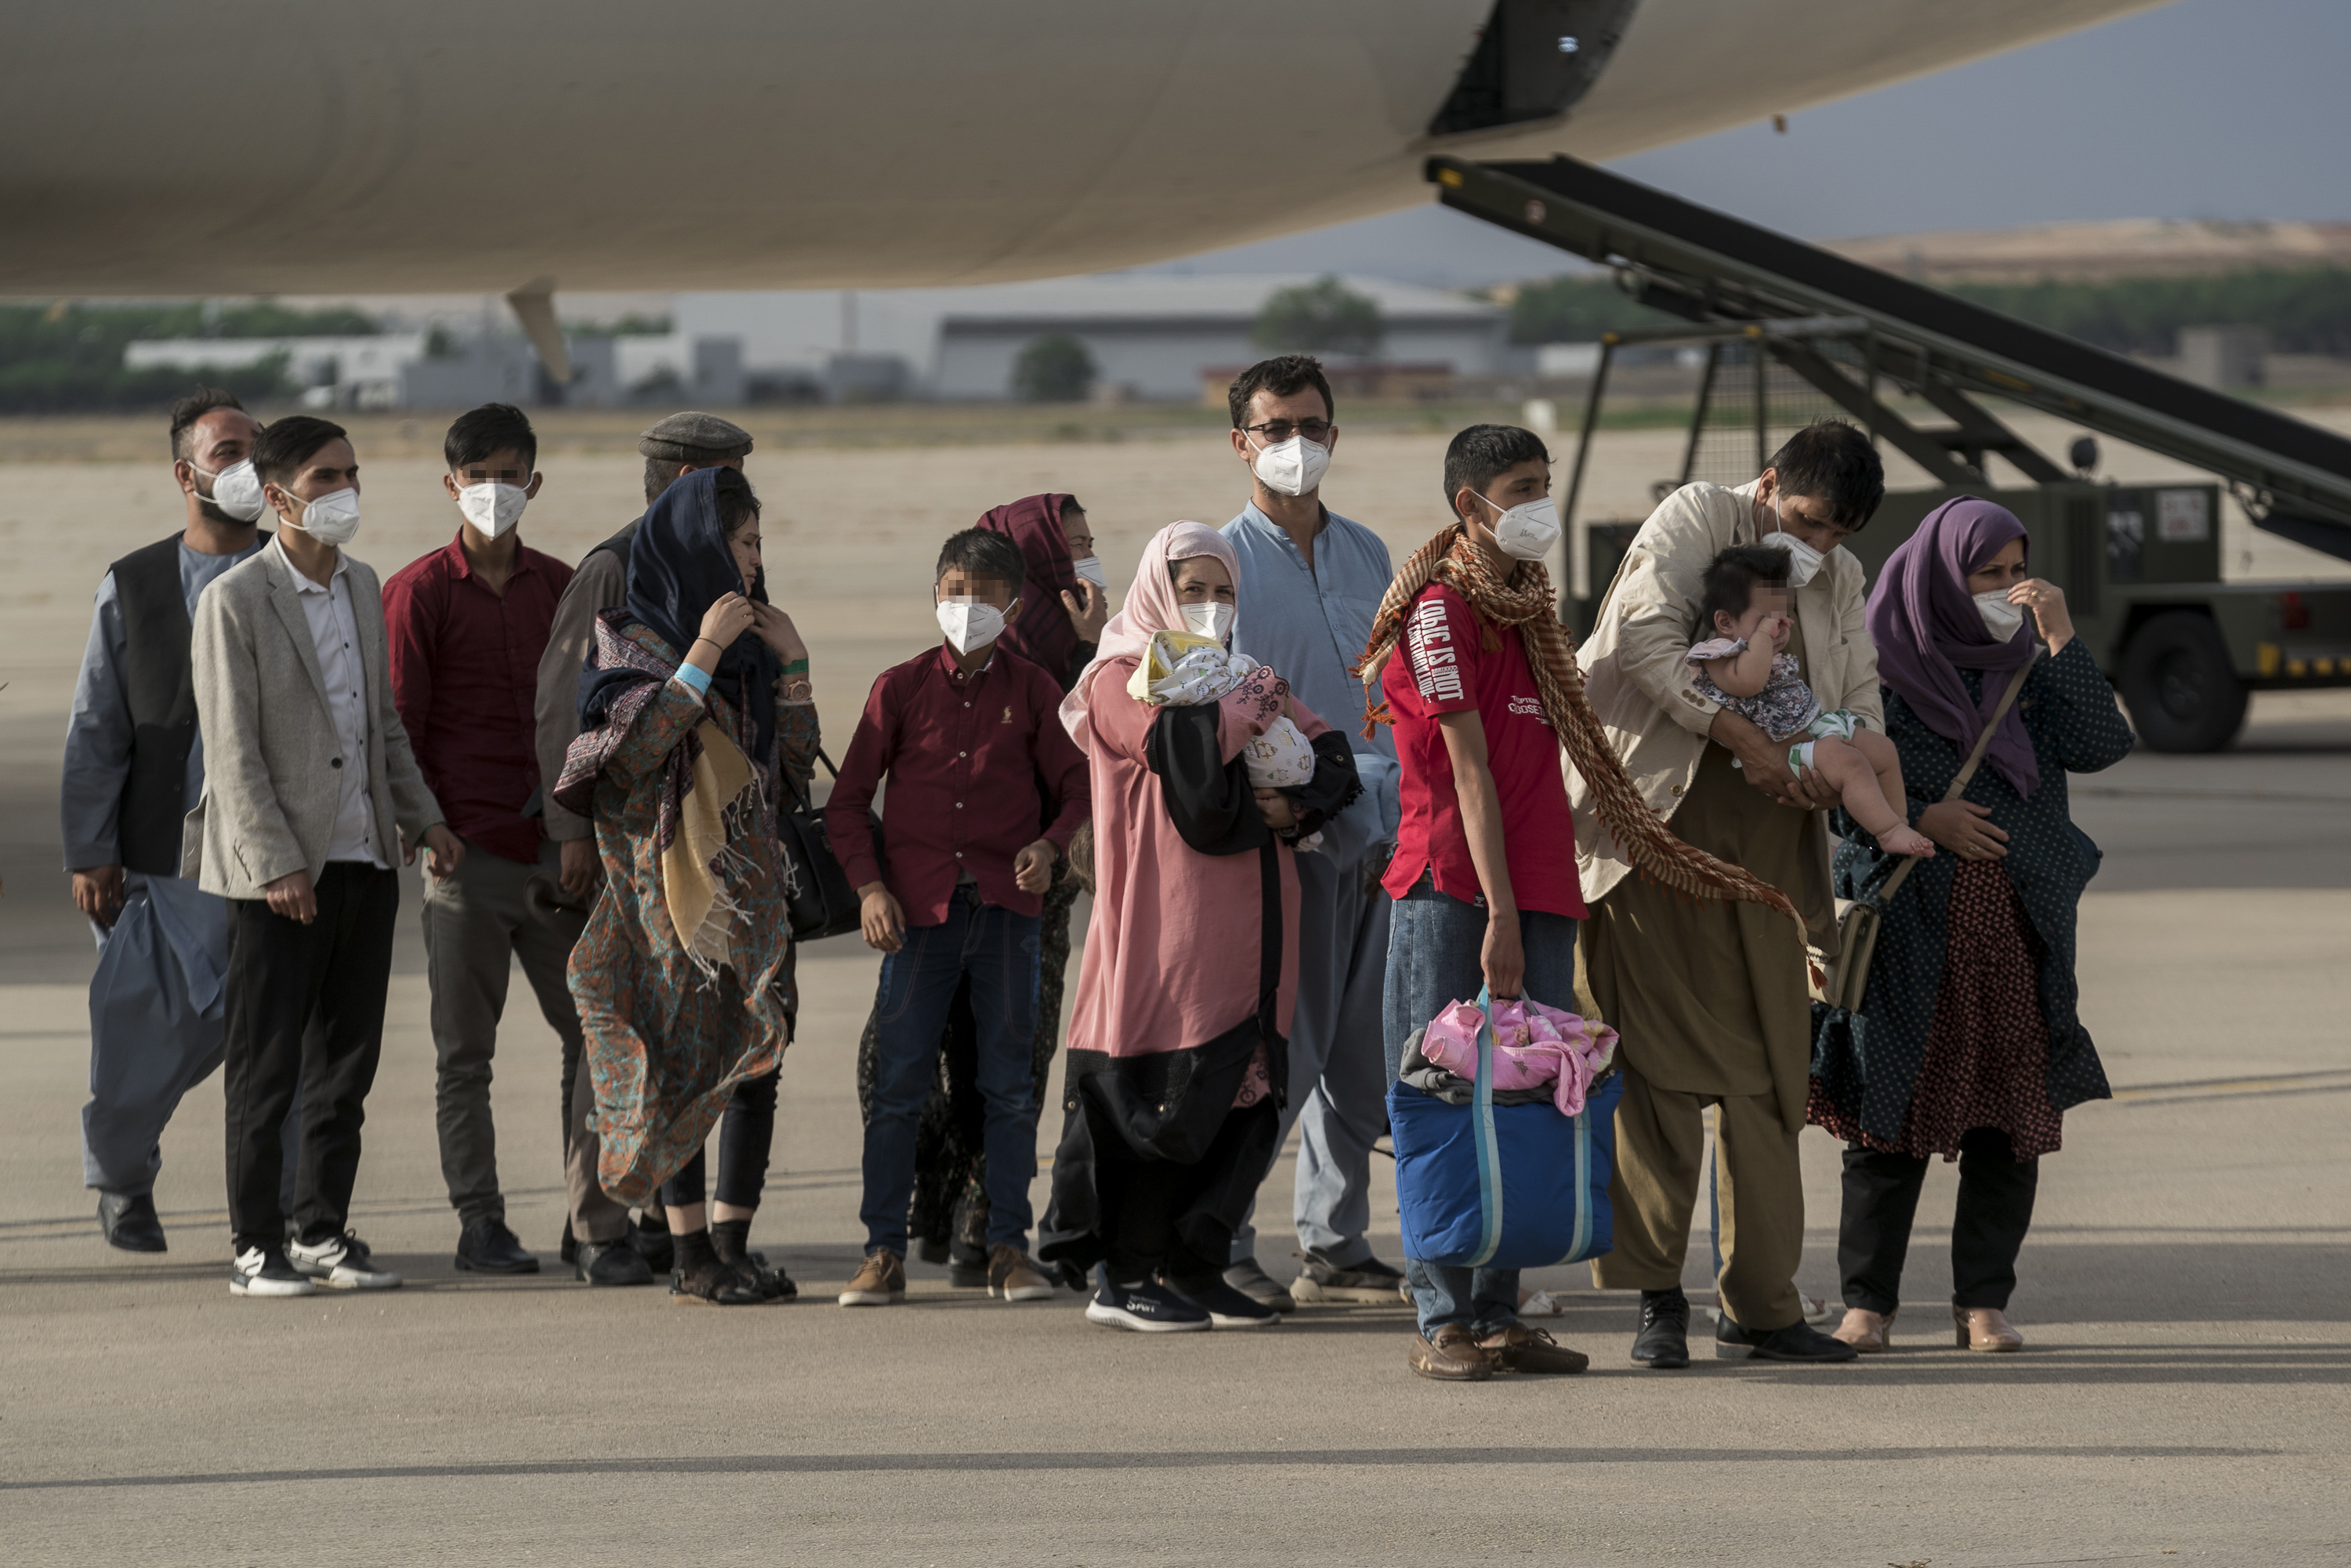 Refugiados afganos a su llegada a España.
A. Pérez Meca - Europa Press
